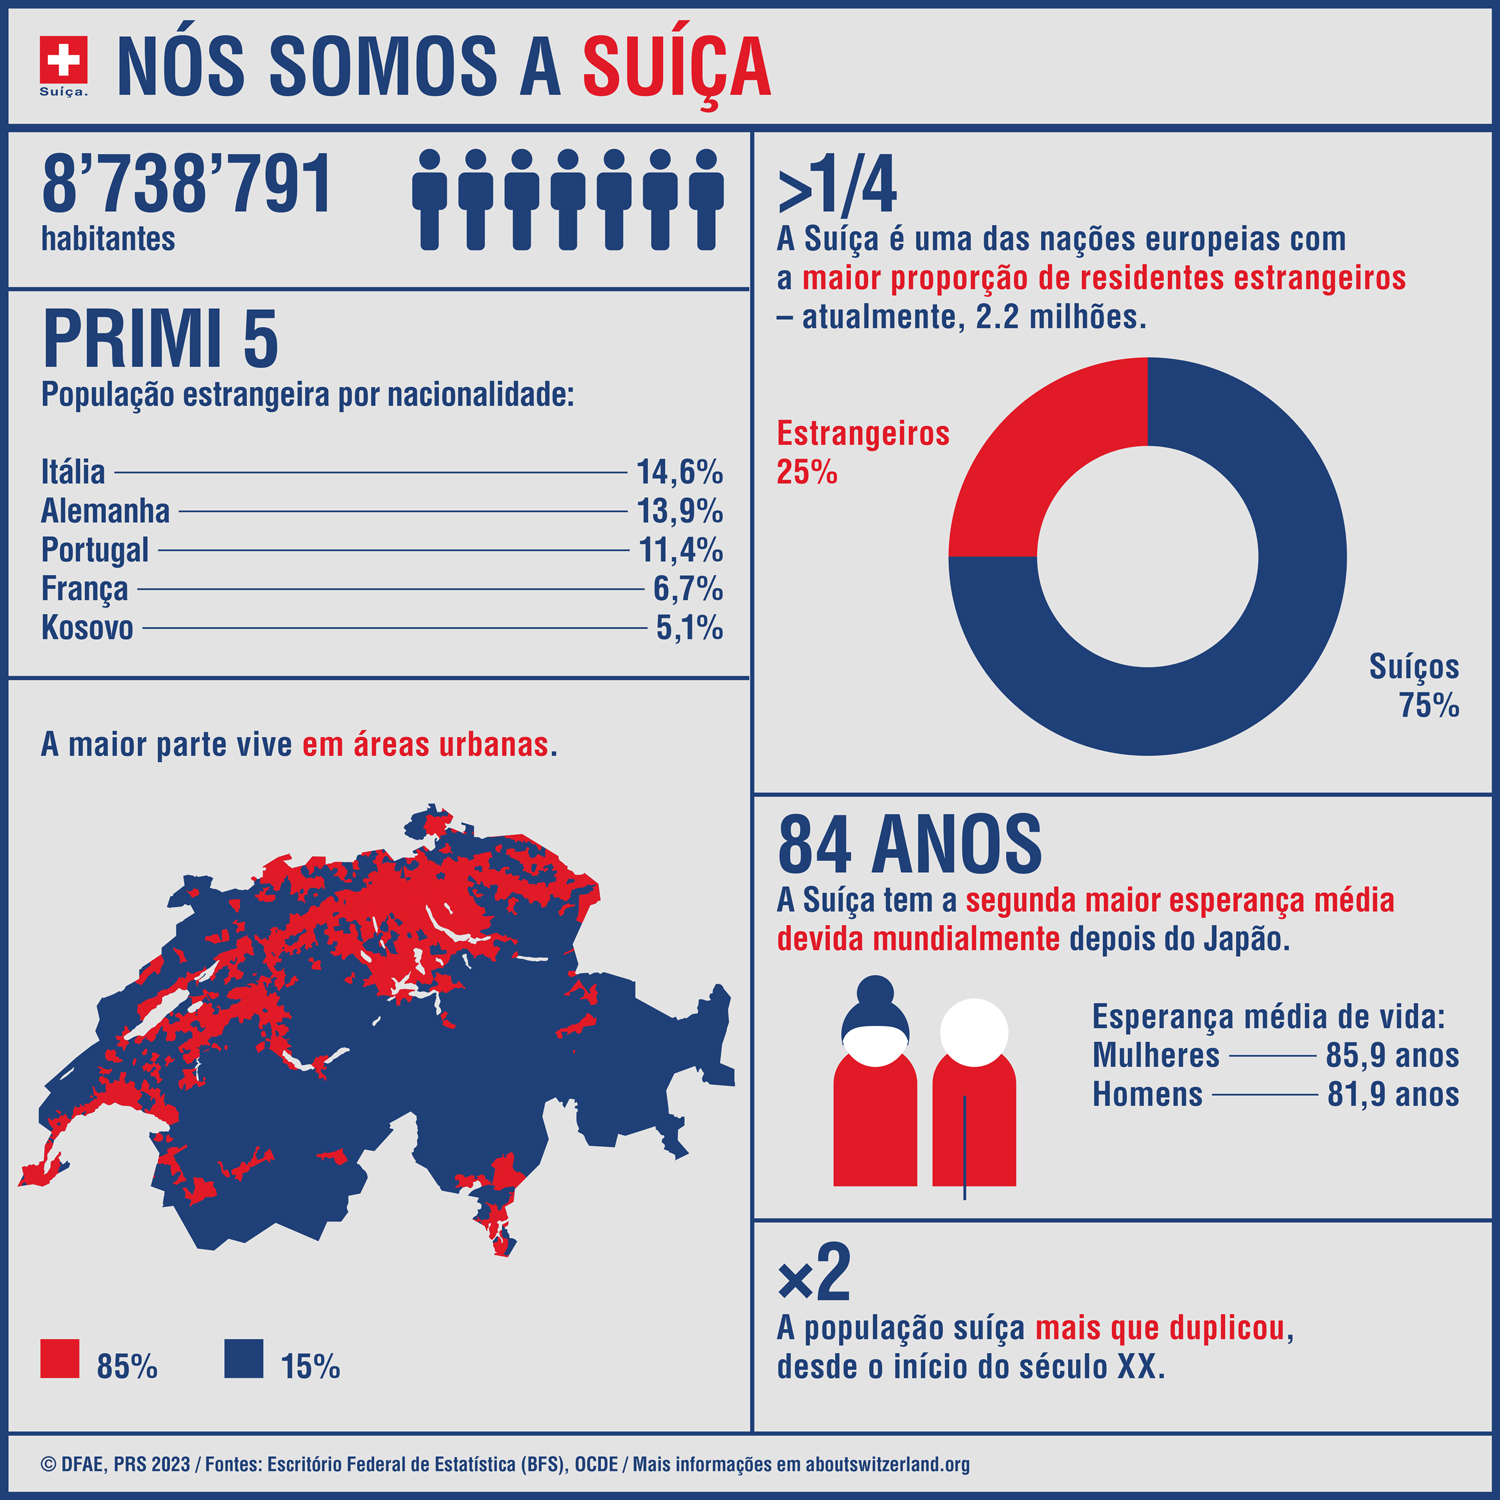 O infográfico mostra os principais números sobre a população da Suíça.